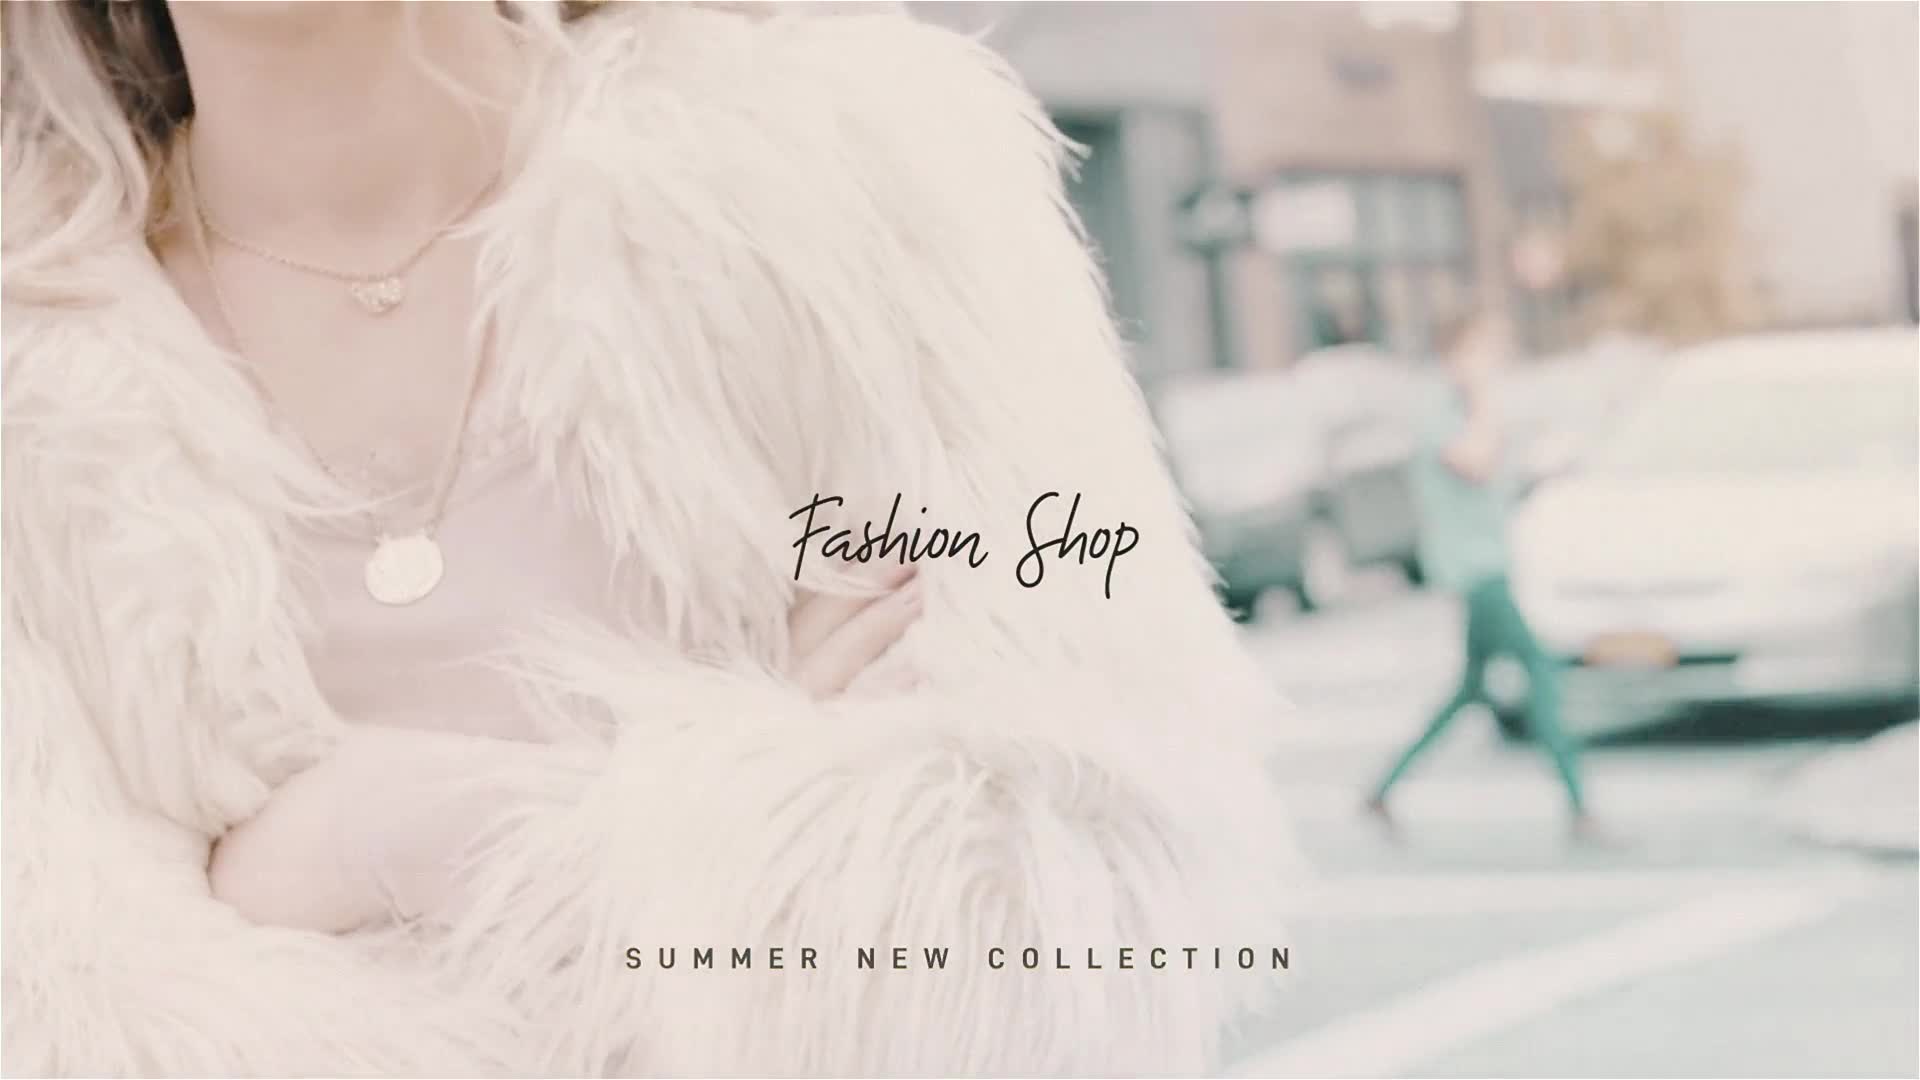 Fashion Shop - Download Videohive 22082677